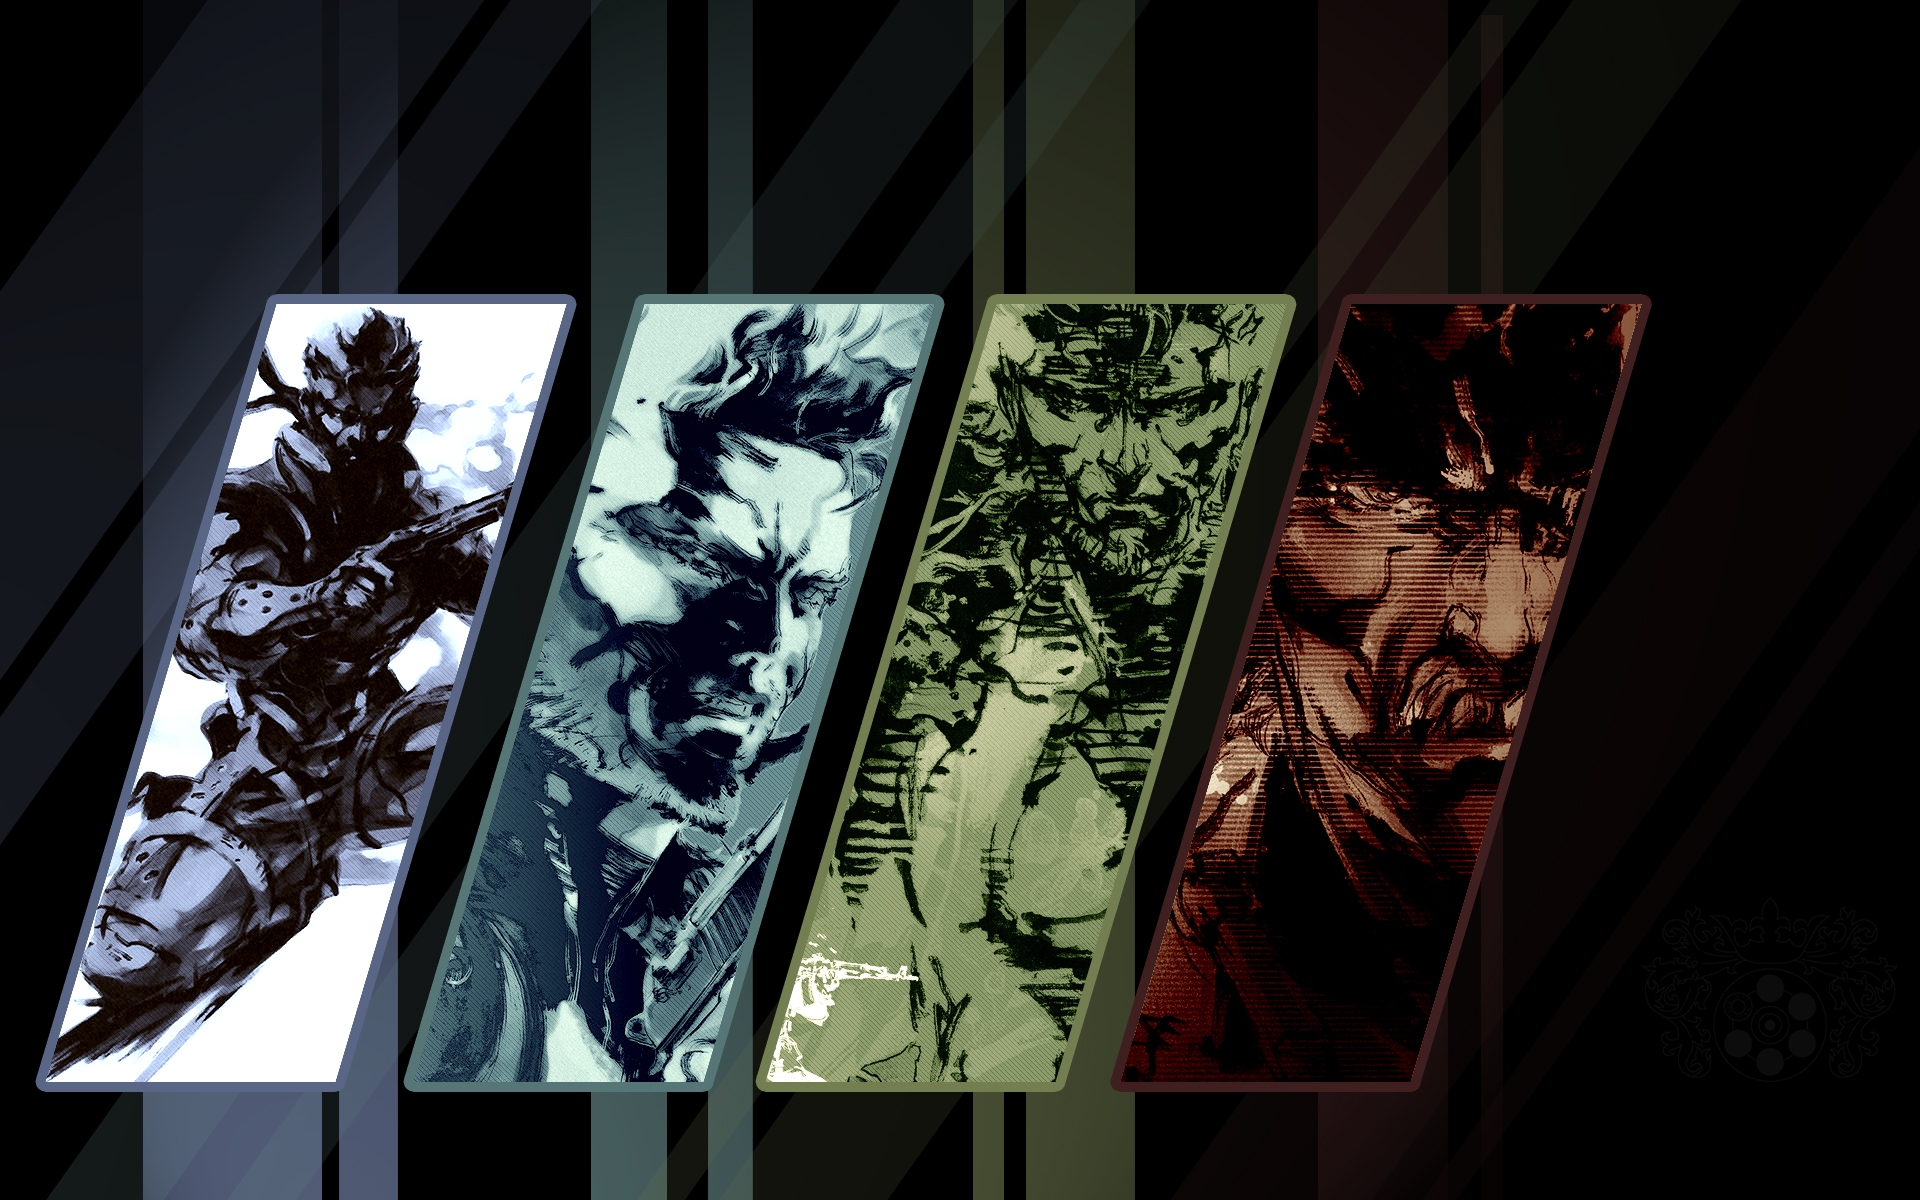 Metal Gear Solid 4 HD Wallpaper | 1920x1080 | ID:17430